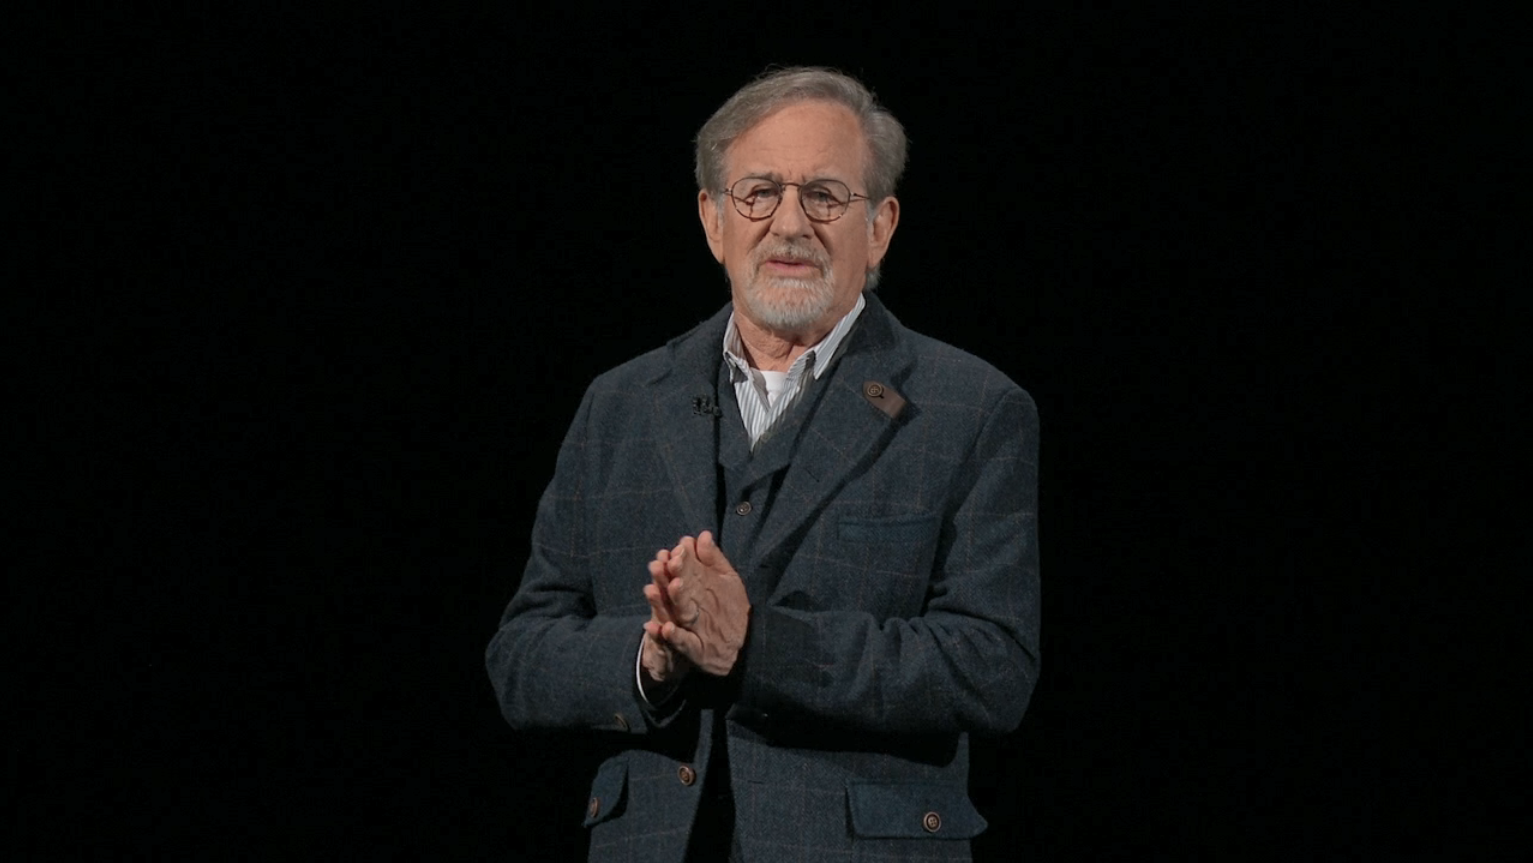  Direktur ET Stephen Spielberg bergabung dengan seri Sci-Fi-nya sendiri